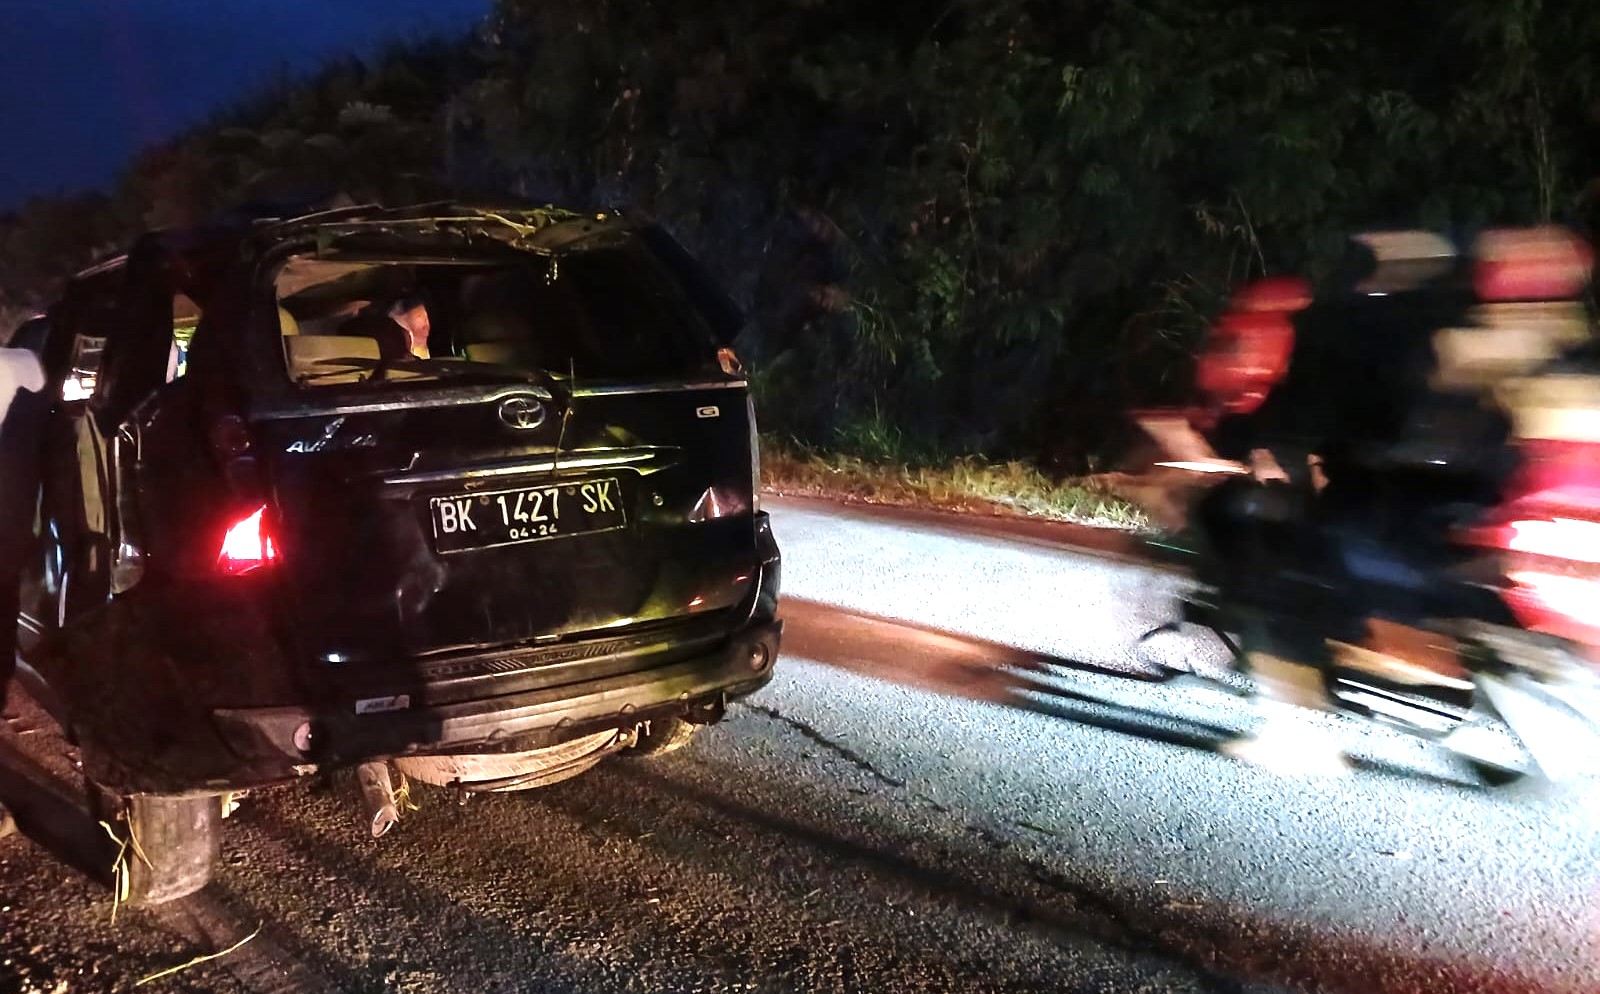 Mobil Toyota Avanza BK 1427 SK yang terjun ke jurang mengalami ringsek, Jumat (2/2/2024) malam. Tujuh penumpangnya terluka.